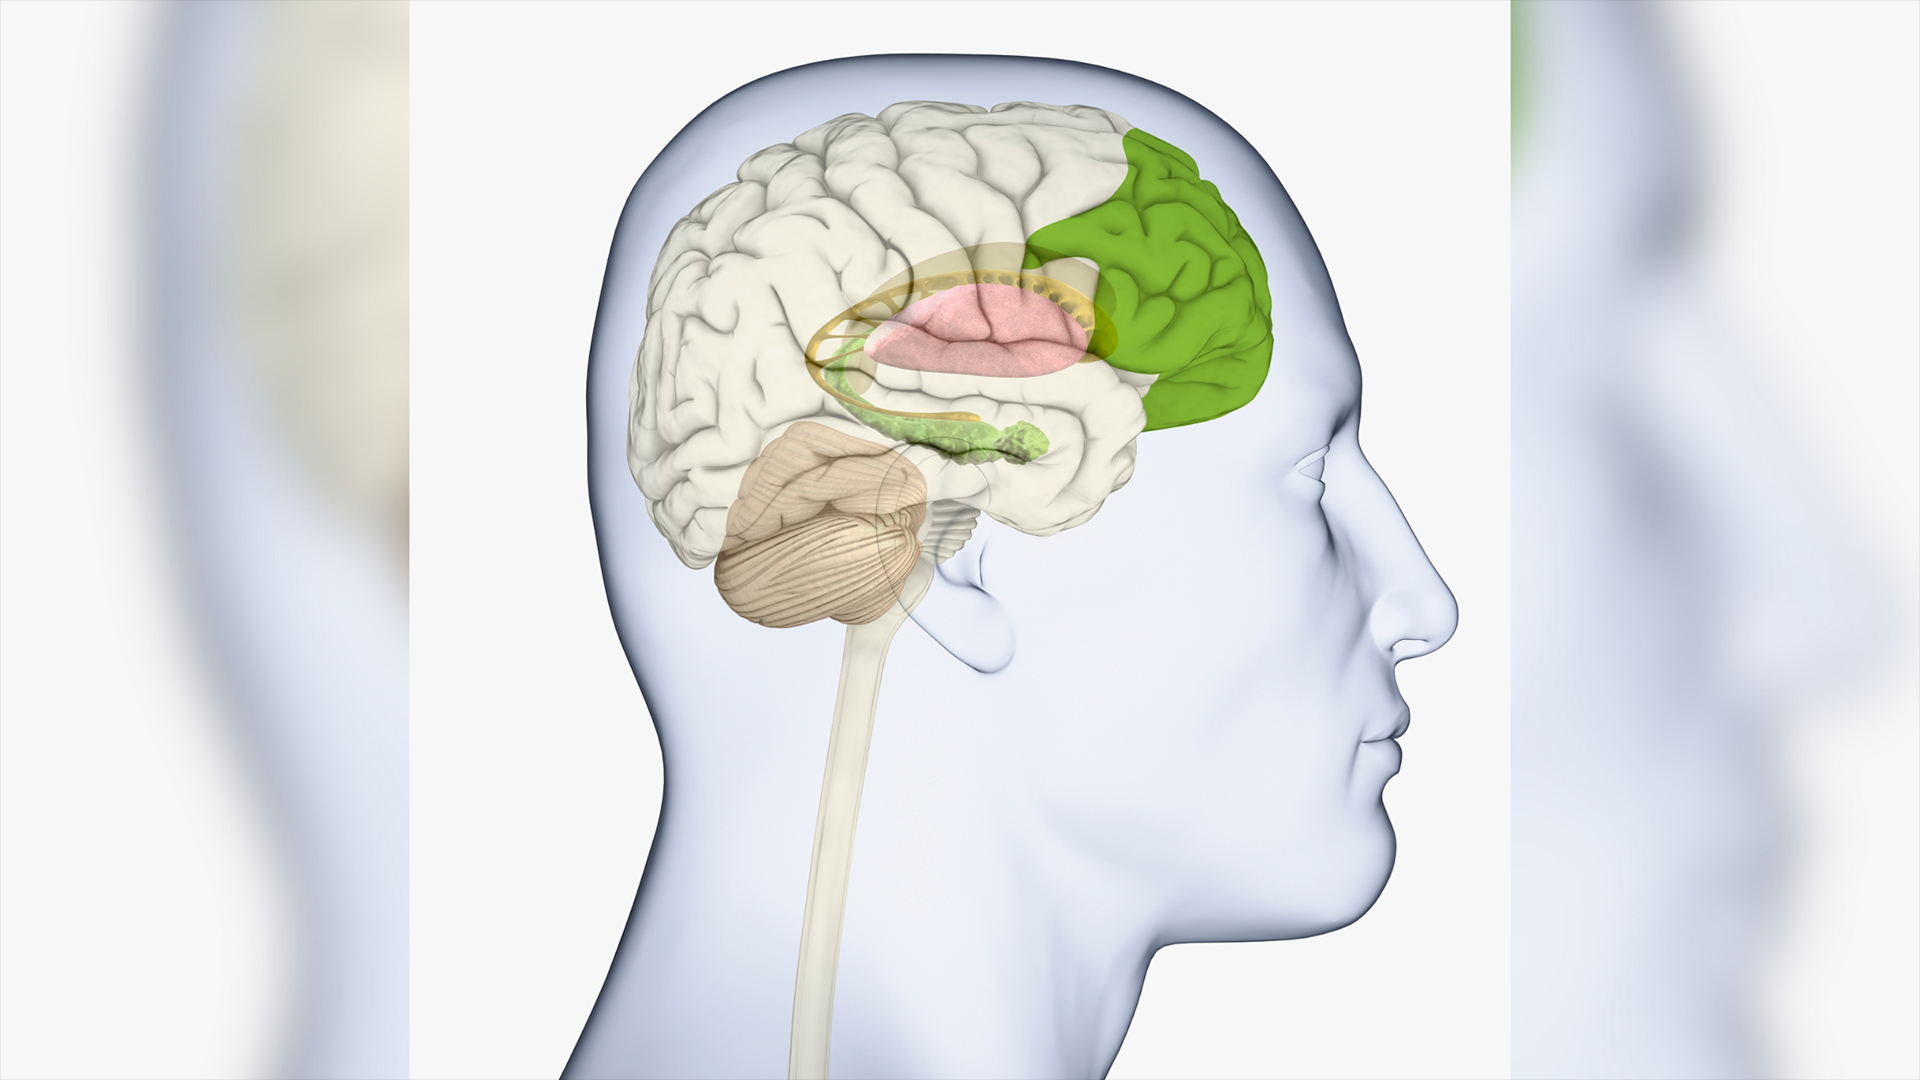 Das seitliche Diagramm des menschlichen Gehirns zeigt den grün hervorgehobenen Vorderlappen